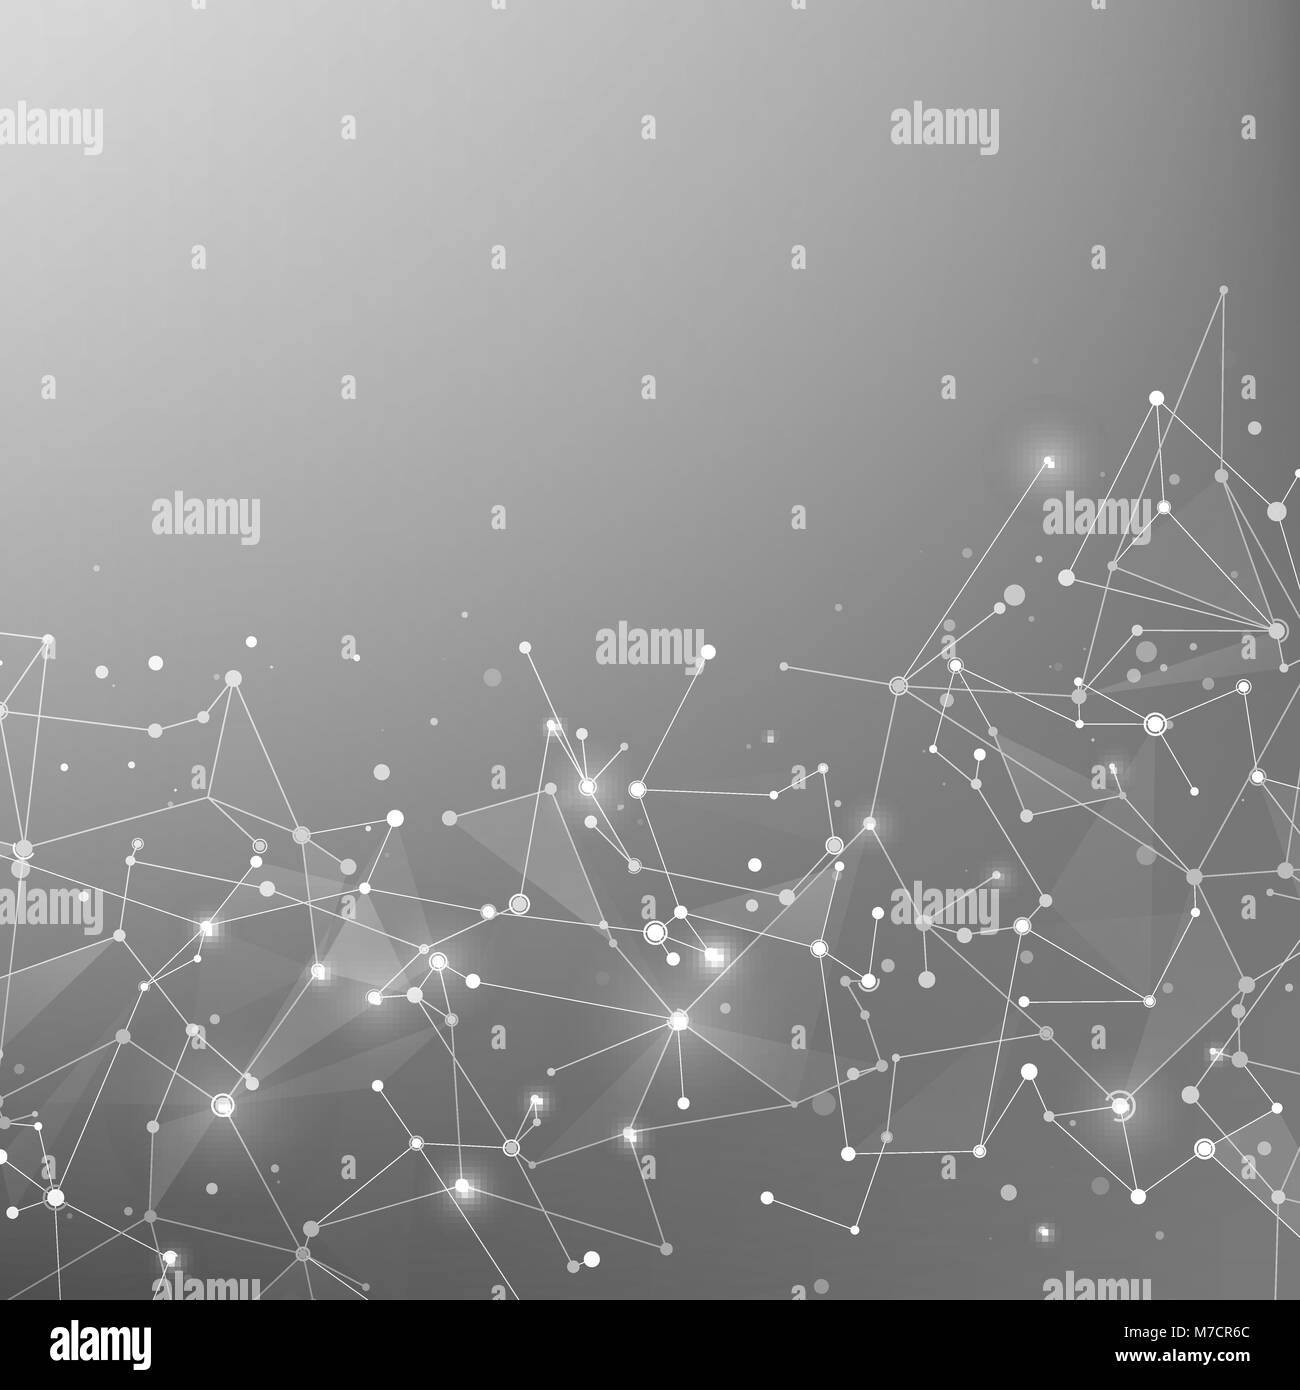 Technik und Wissenschaft Hintergrund. Polygonale Hintergrund. Zusammenfassung Web und Knoten. Plexus atom Struktur. Vector Illustration Stock Vektor